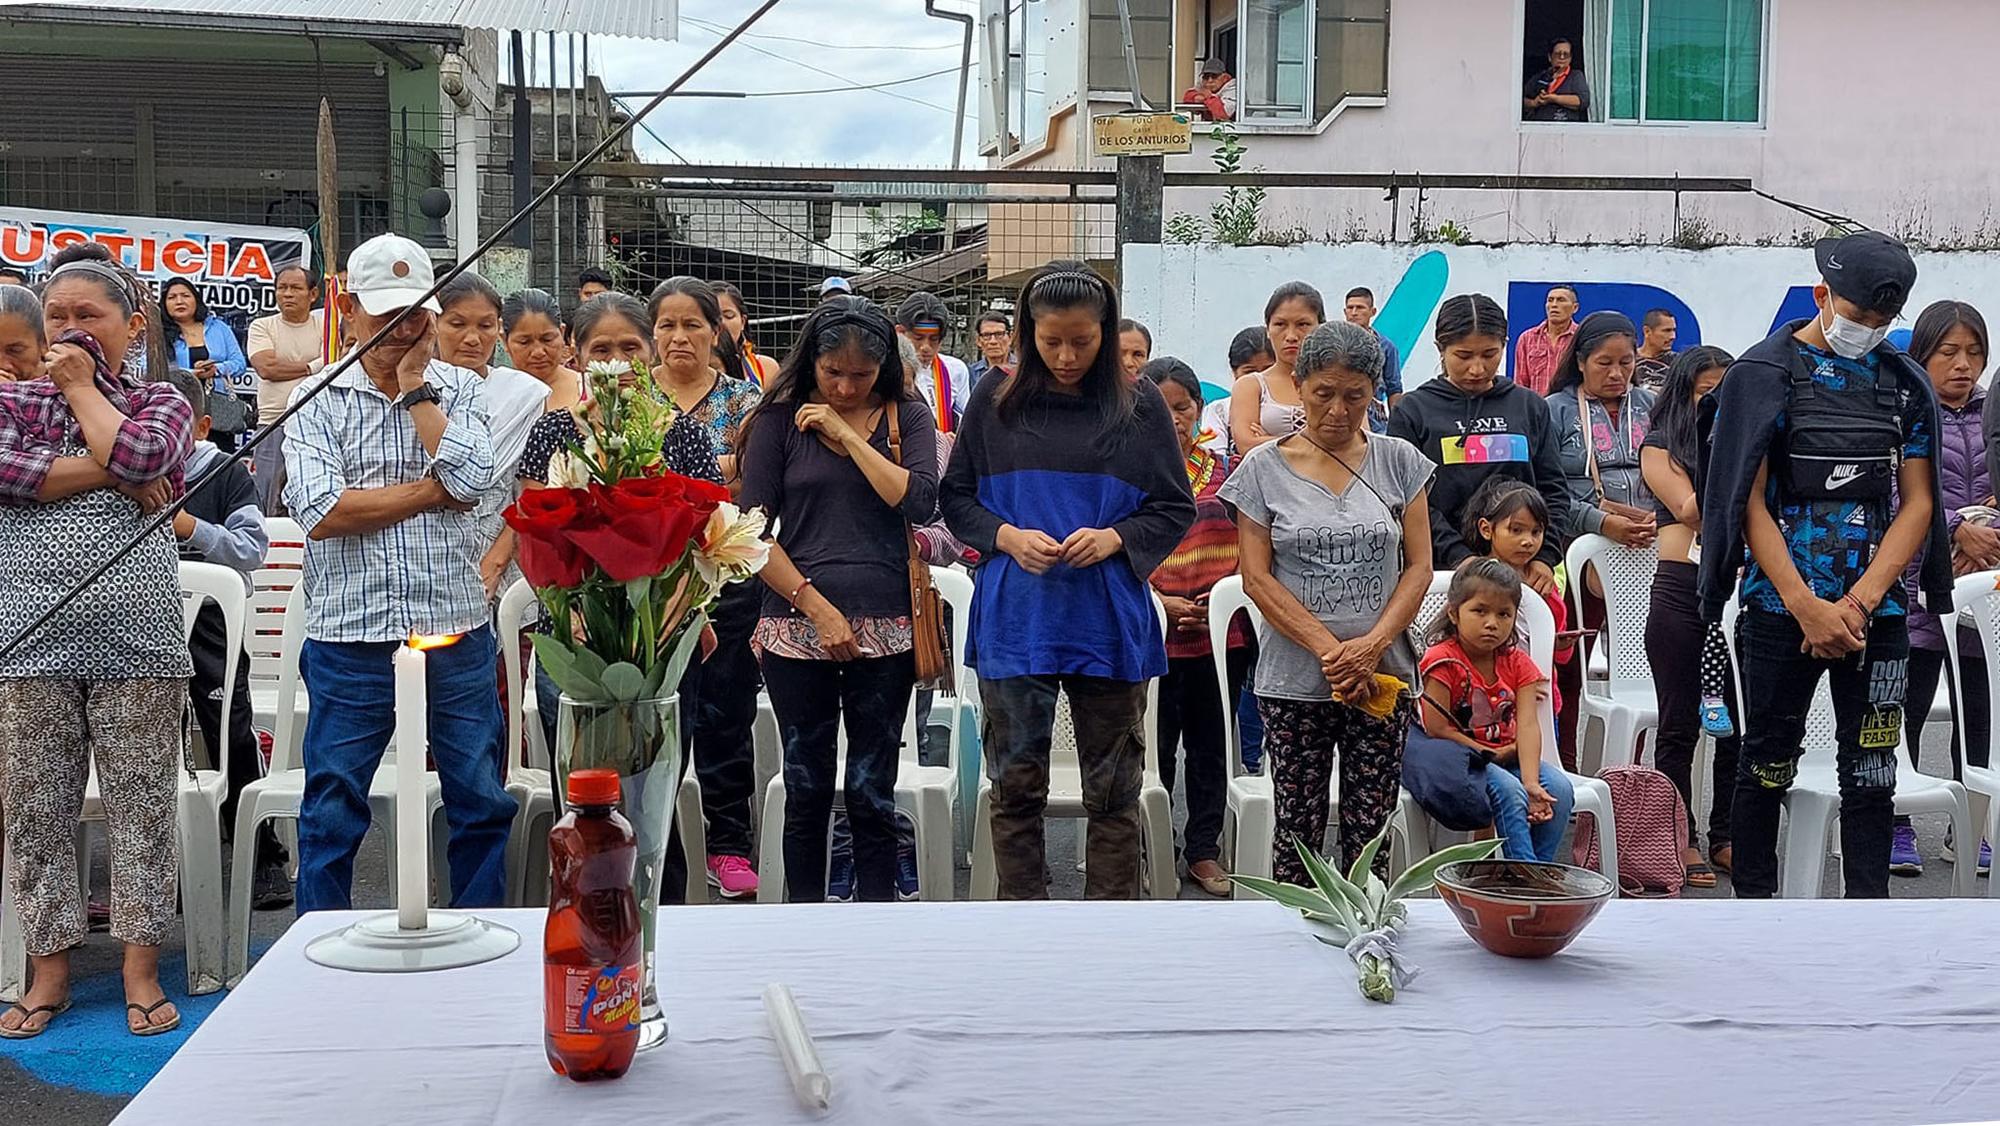 Los muertos del junio ecuatoriano - 4